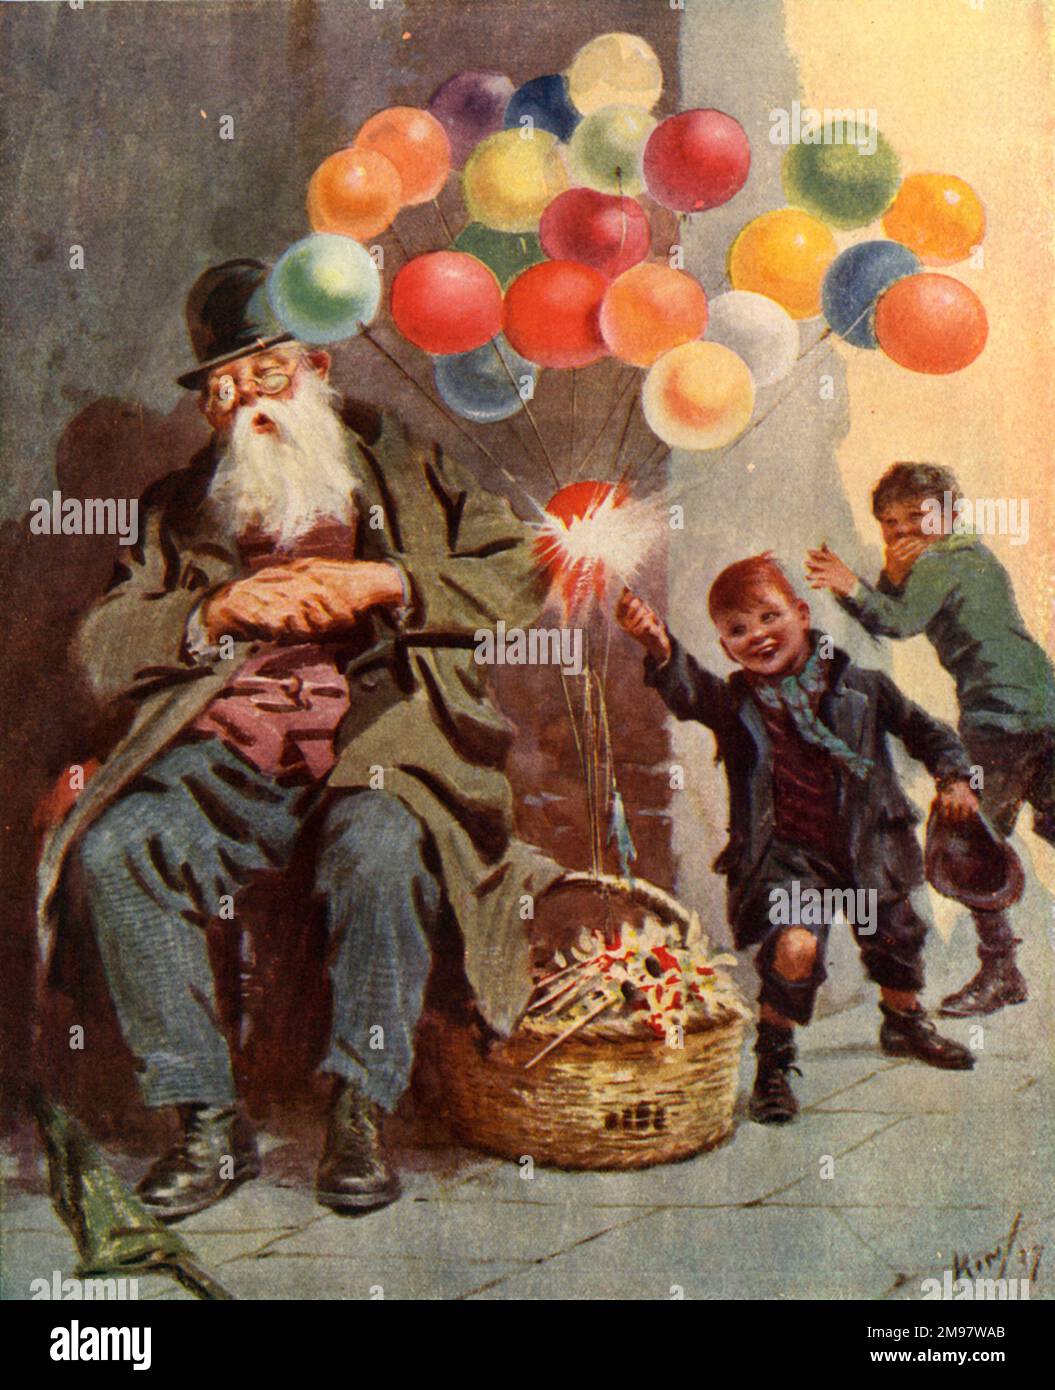 Balloon Seller et deux garçons méchants Banque D'Images